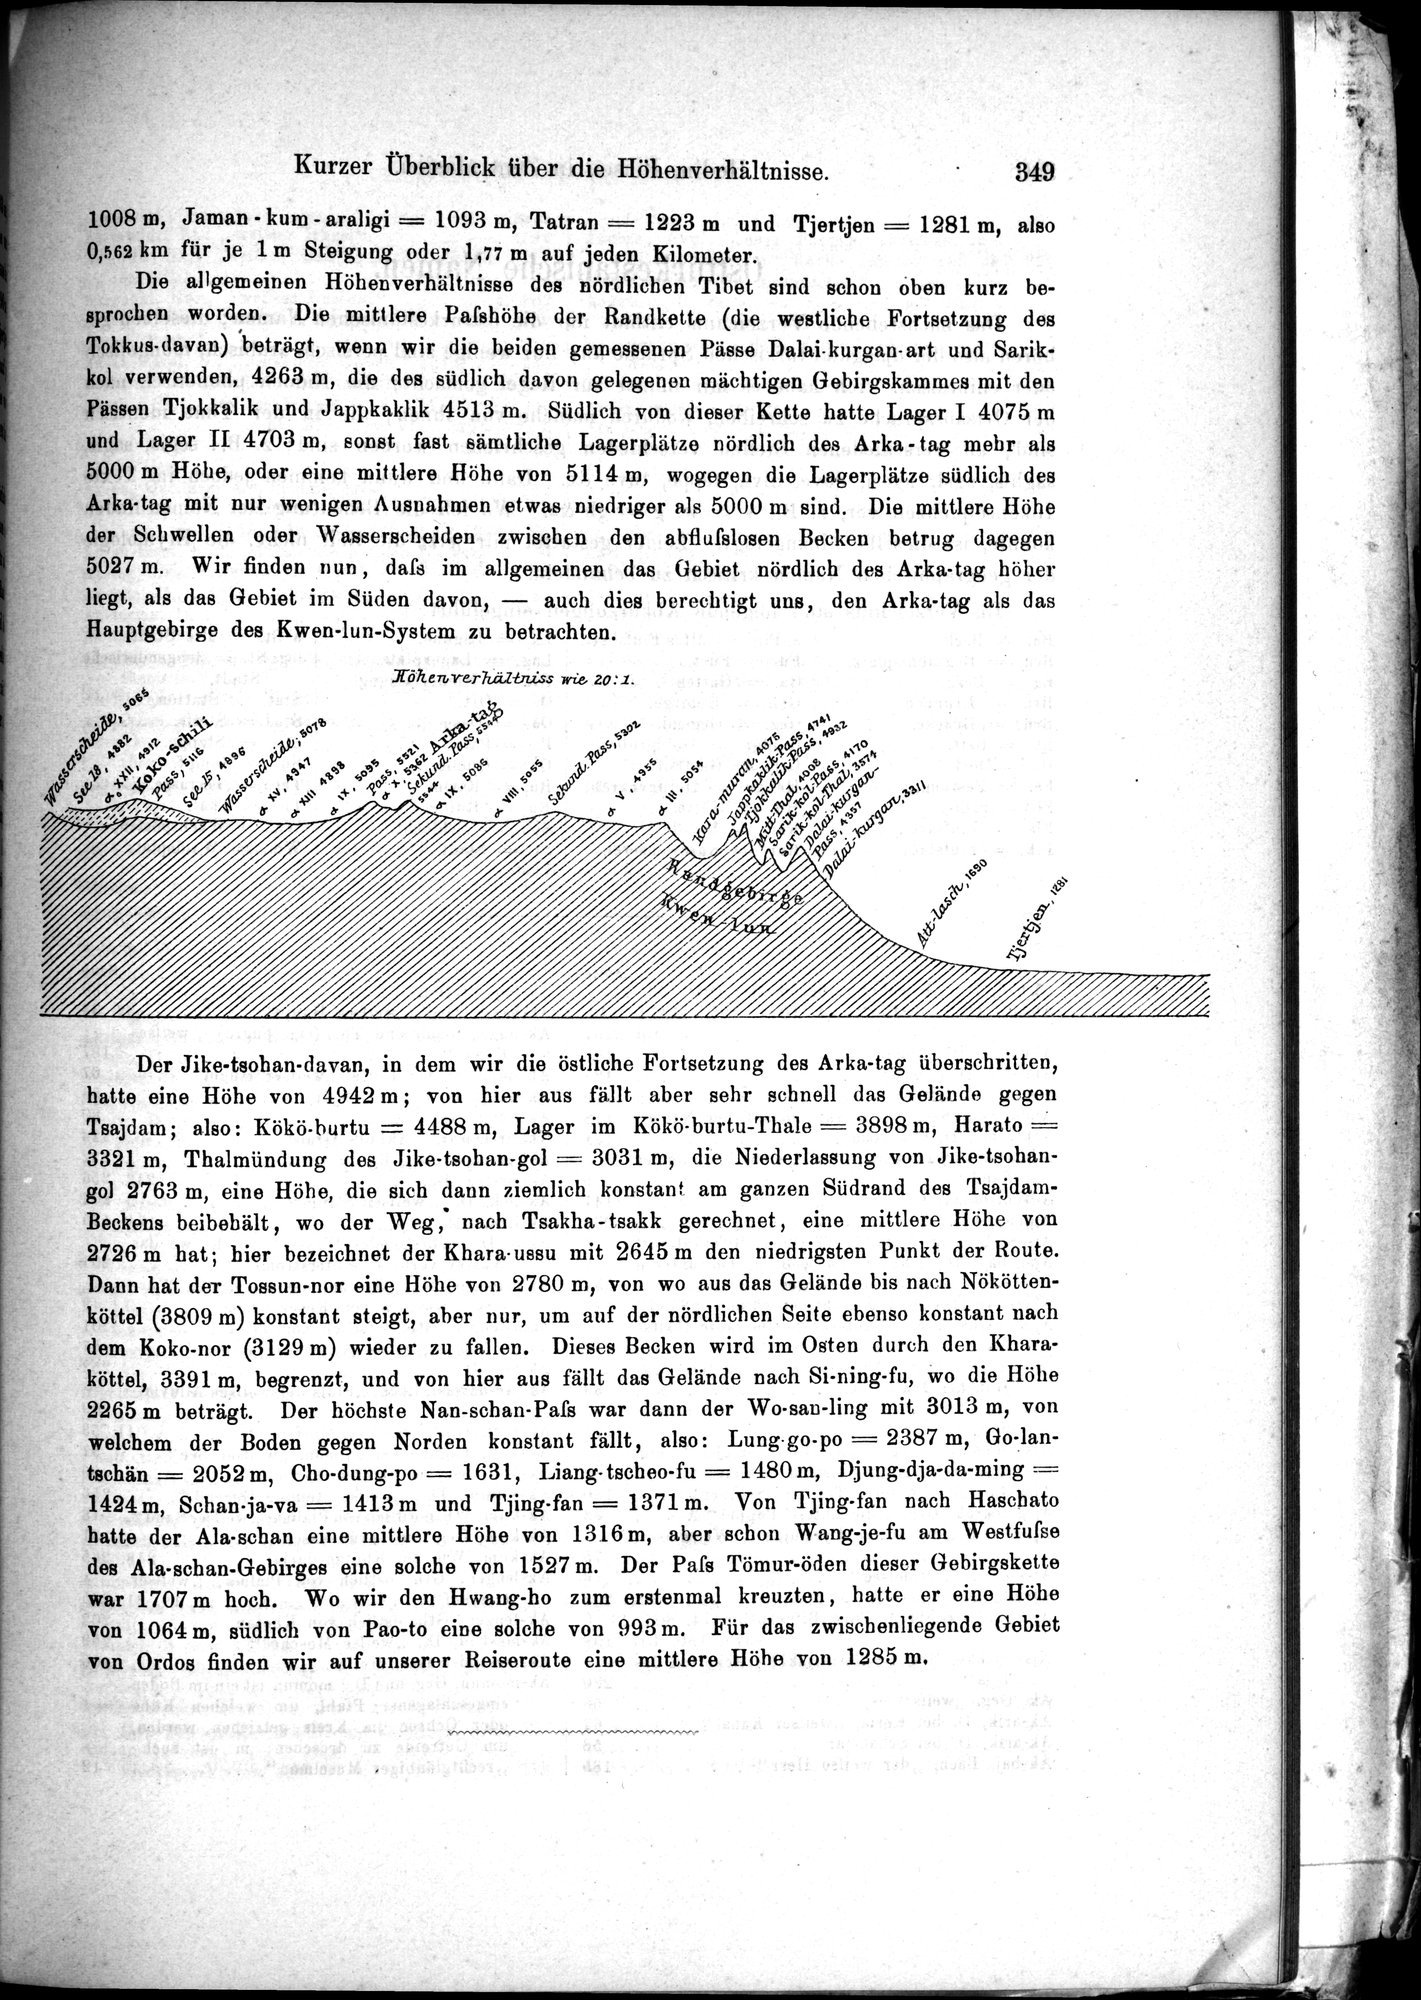 Die Geographische-Wissenschaftlichen Ergebnisse meiner Reisen in Zentralasien, 1894-1897 : vol.1 / Page 361 (Grayscale High Resolution Image)